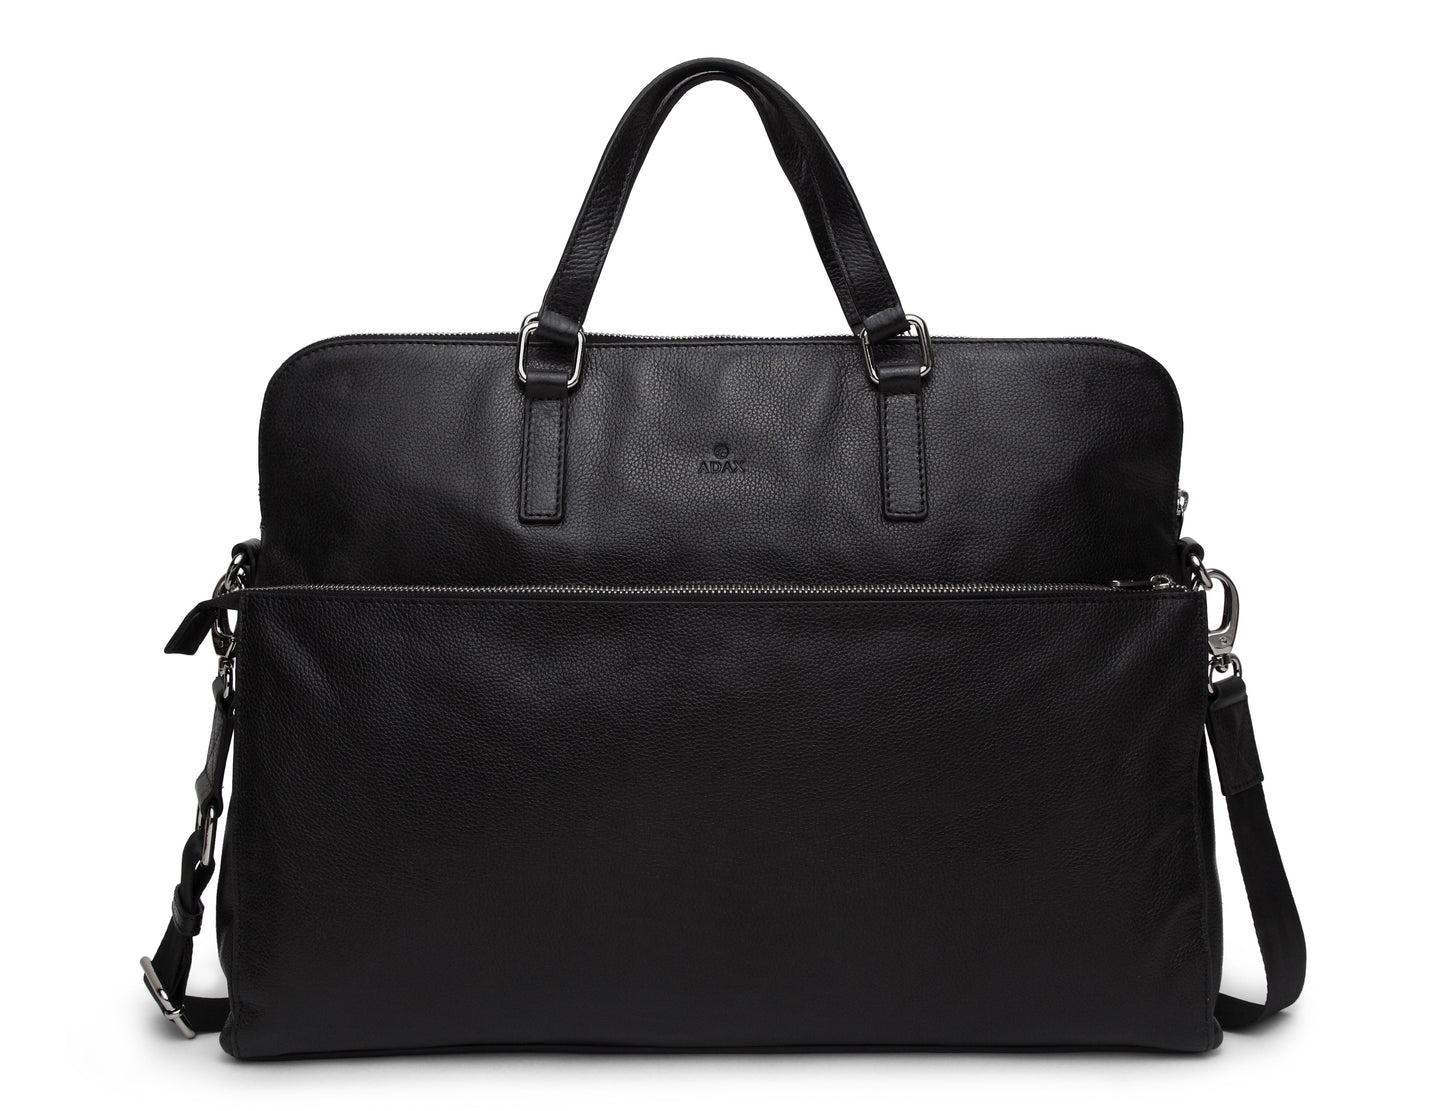 Businesstasche 271325 von Adax - Laure Bags and Travel